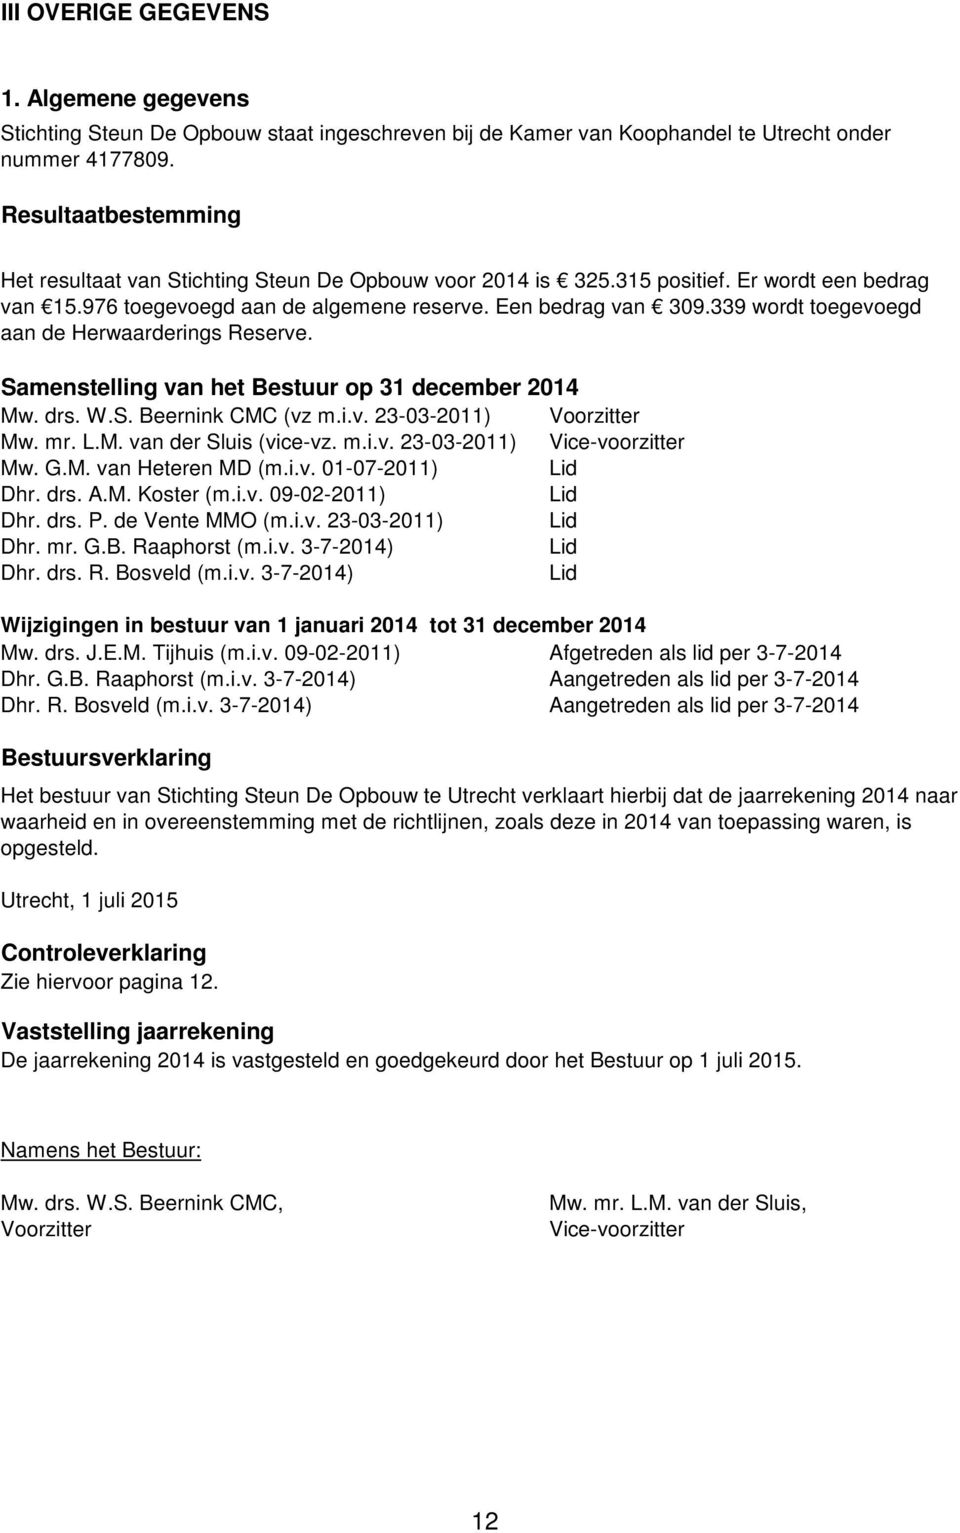 339 wordt toegevoegd aan de Herwaarderings Reserve. Samenstelling van het Bestuur op 31 december 2014 Mw. drs. W.S. Beernink CMC (vz m.i.v. 23-03-2011) Voorzitter Mw. mr. L.M. van der Sluis (vice-vz.